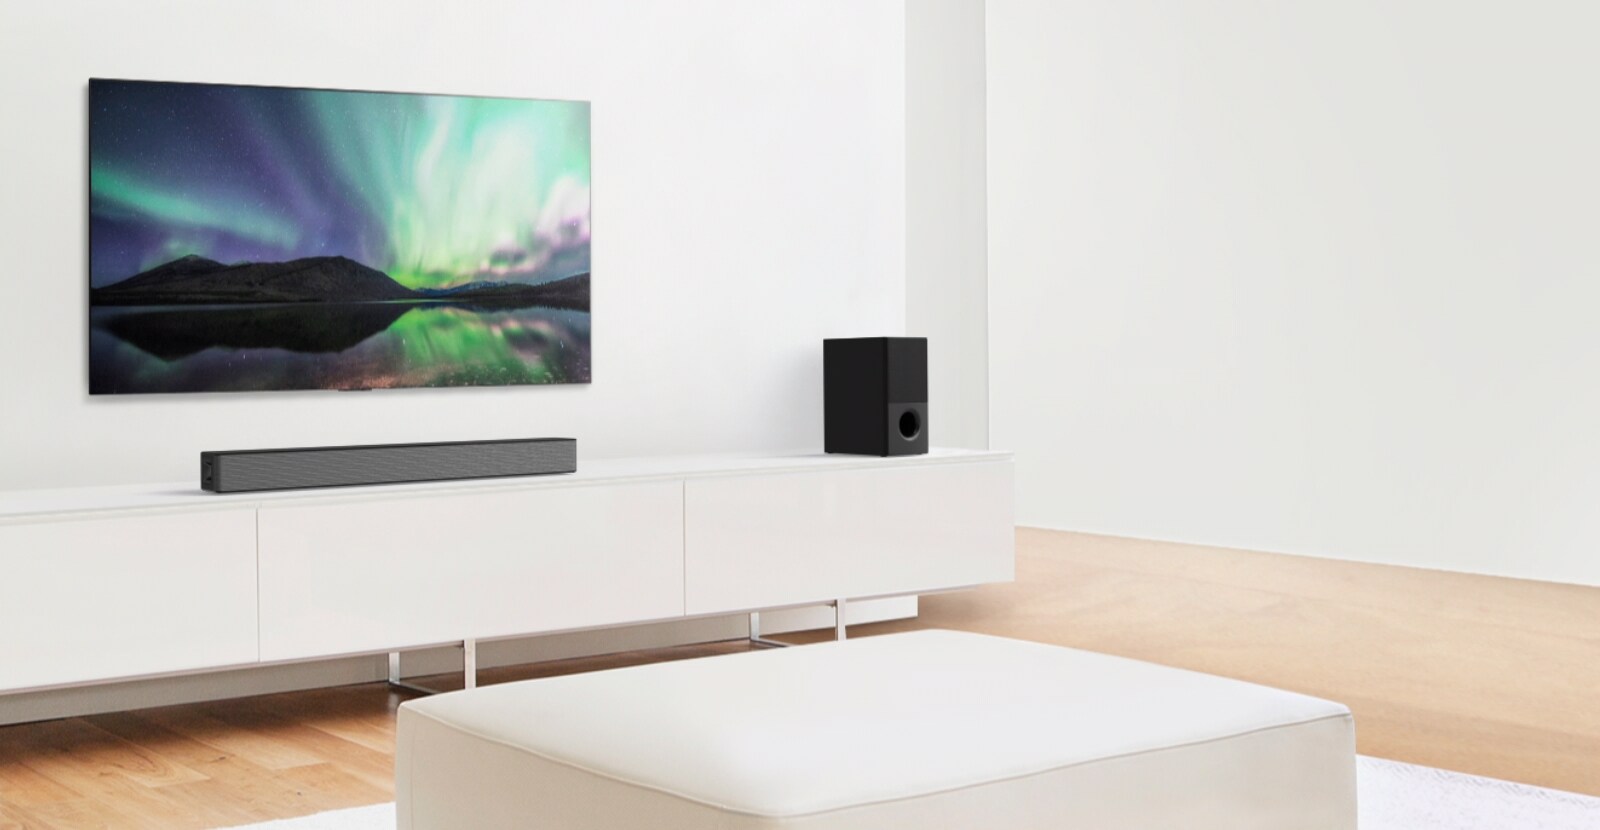 Video xem trước hiển thị Loa thanh LG trong một căn phòng khách màu trắng, thiết lập 4.1 kênh.